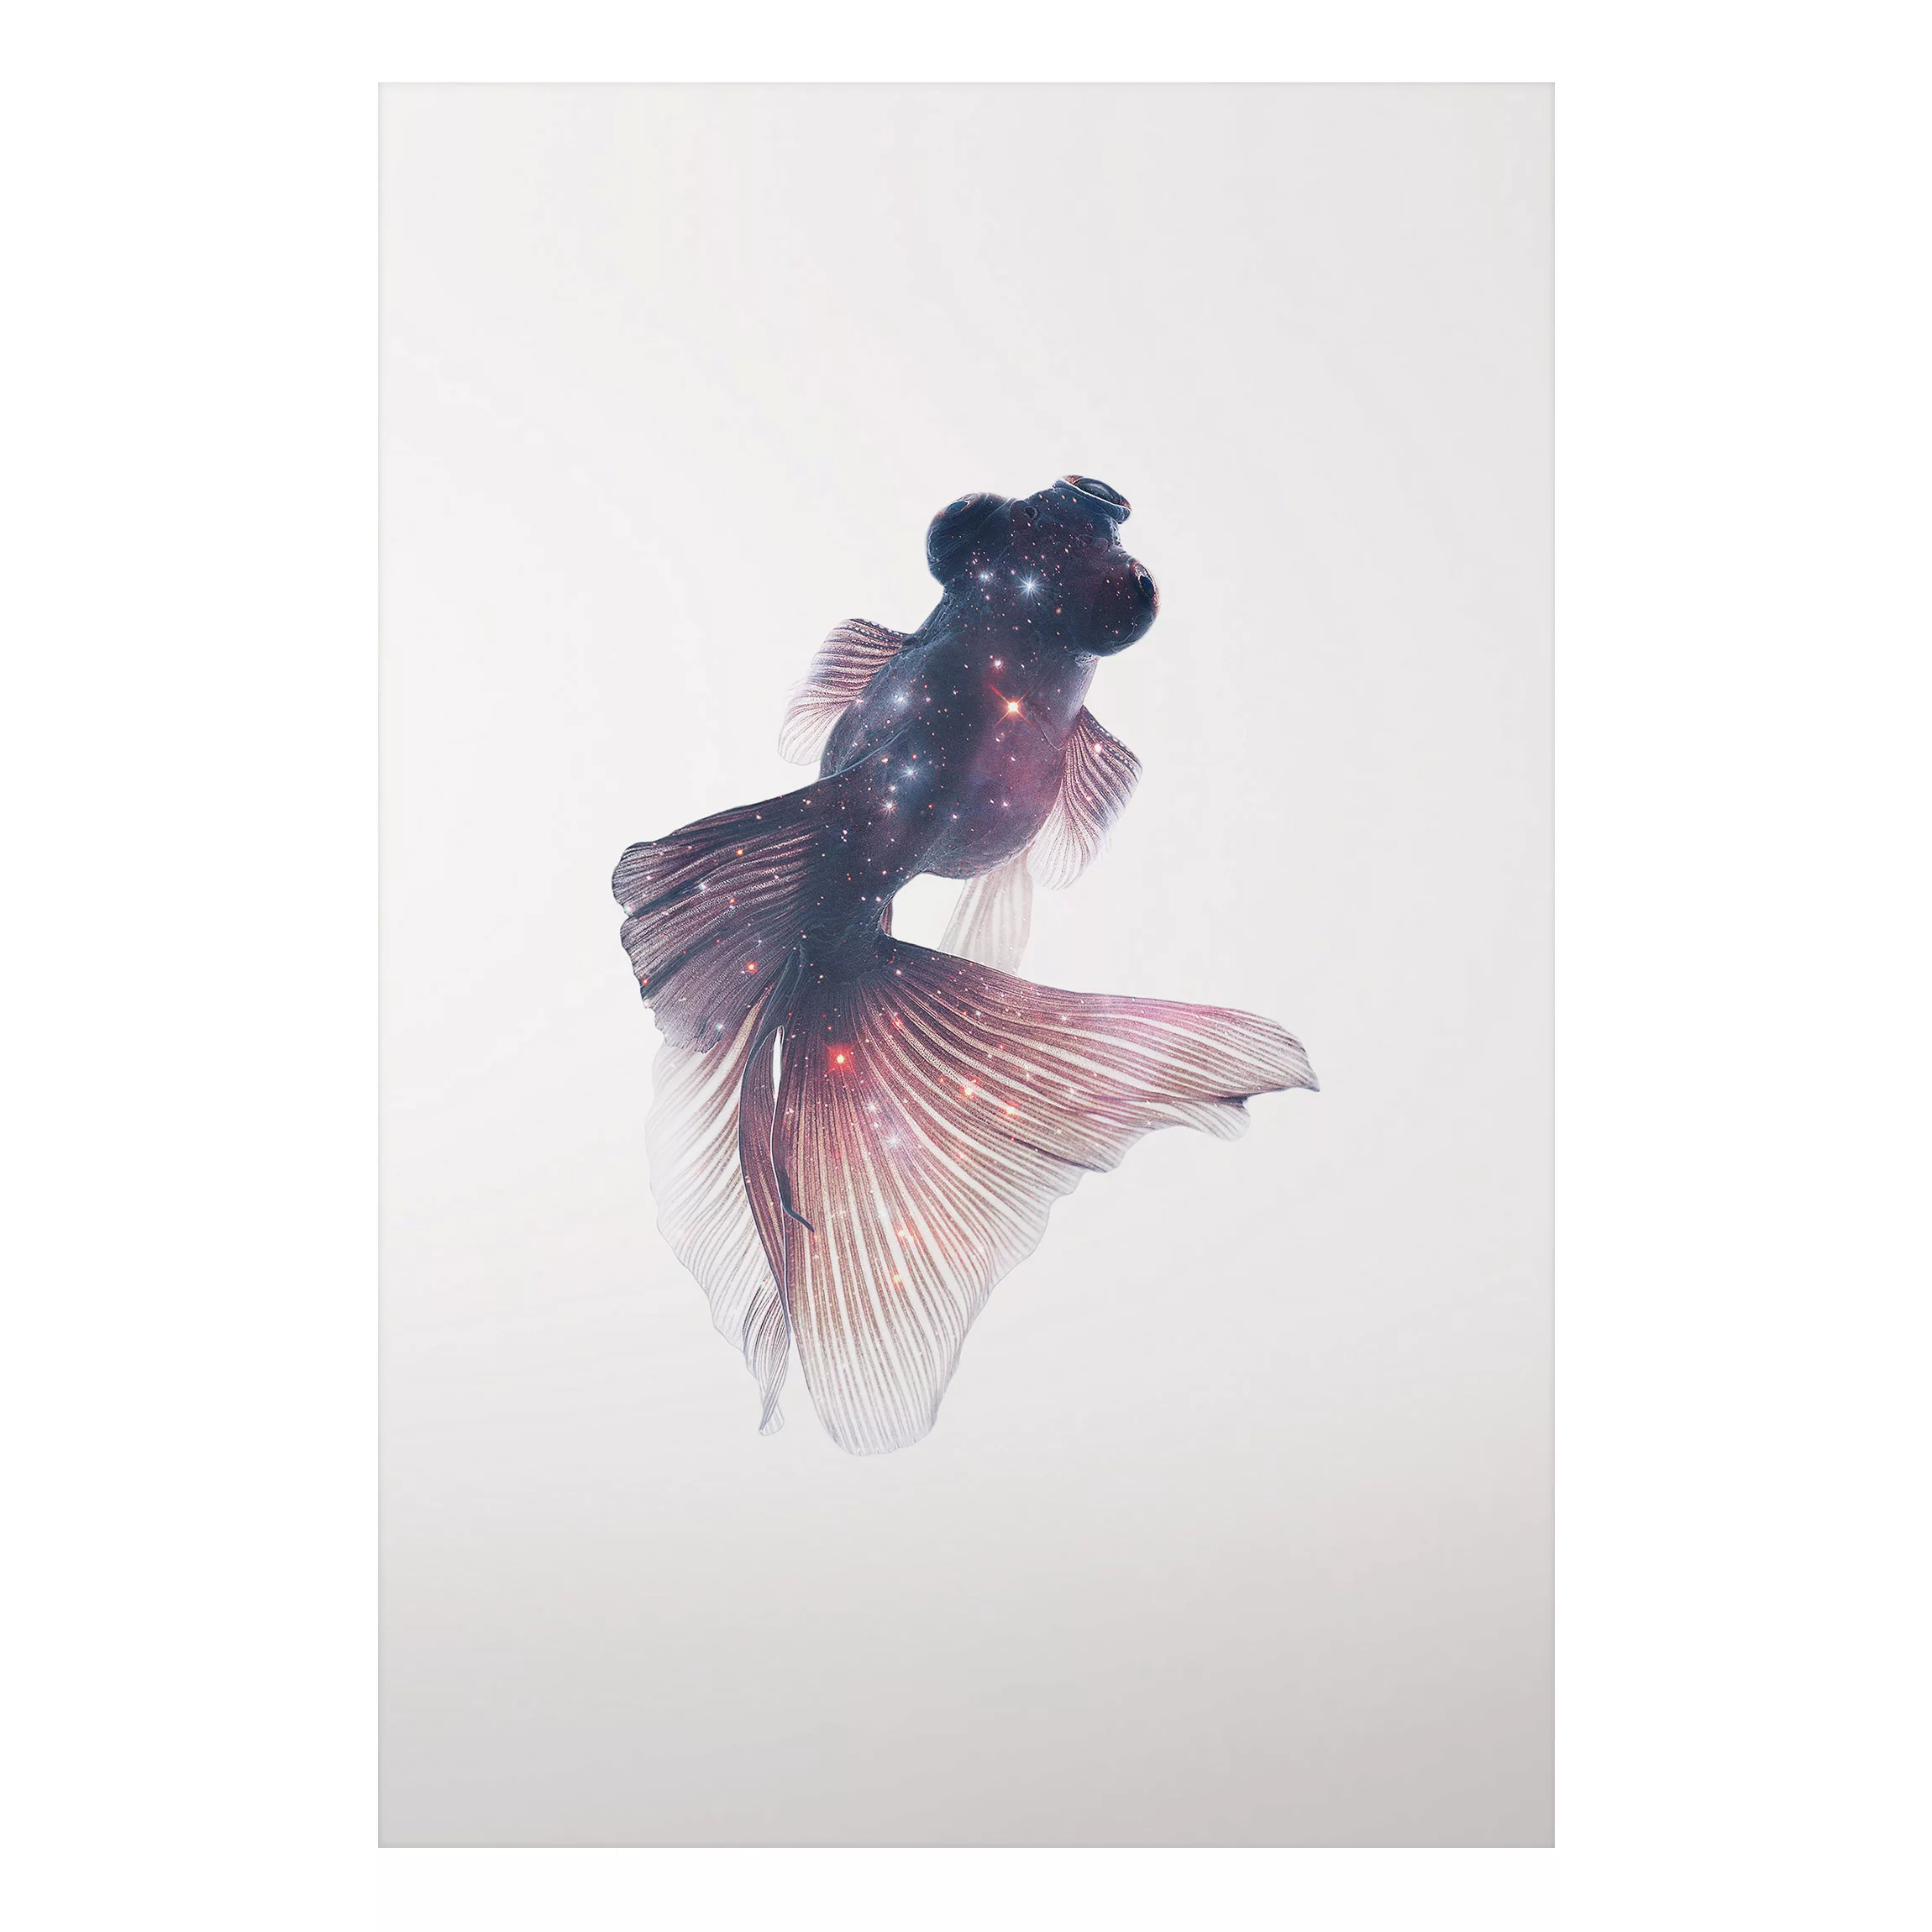 Alu-Dibond Bild Kunstdruck - Hochformat 2:3 Fisch mit Galaxie günstig online kaufen